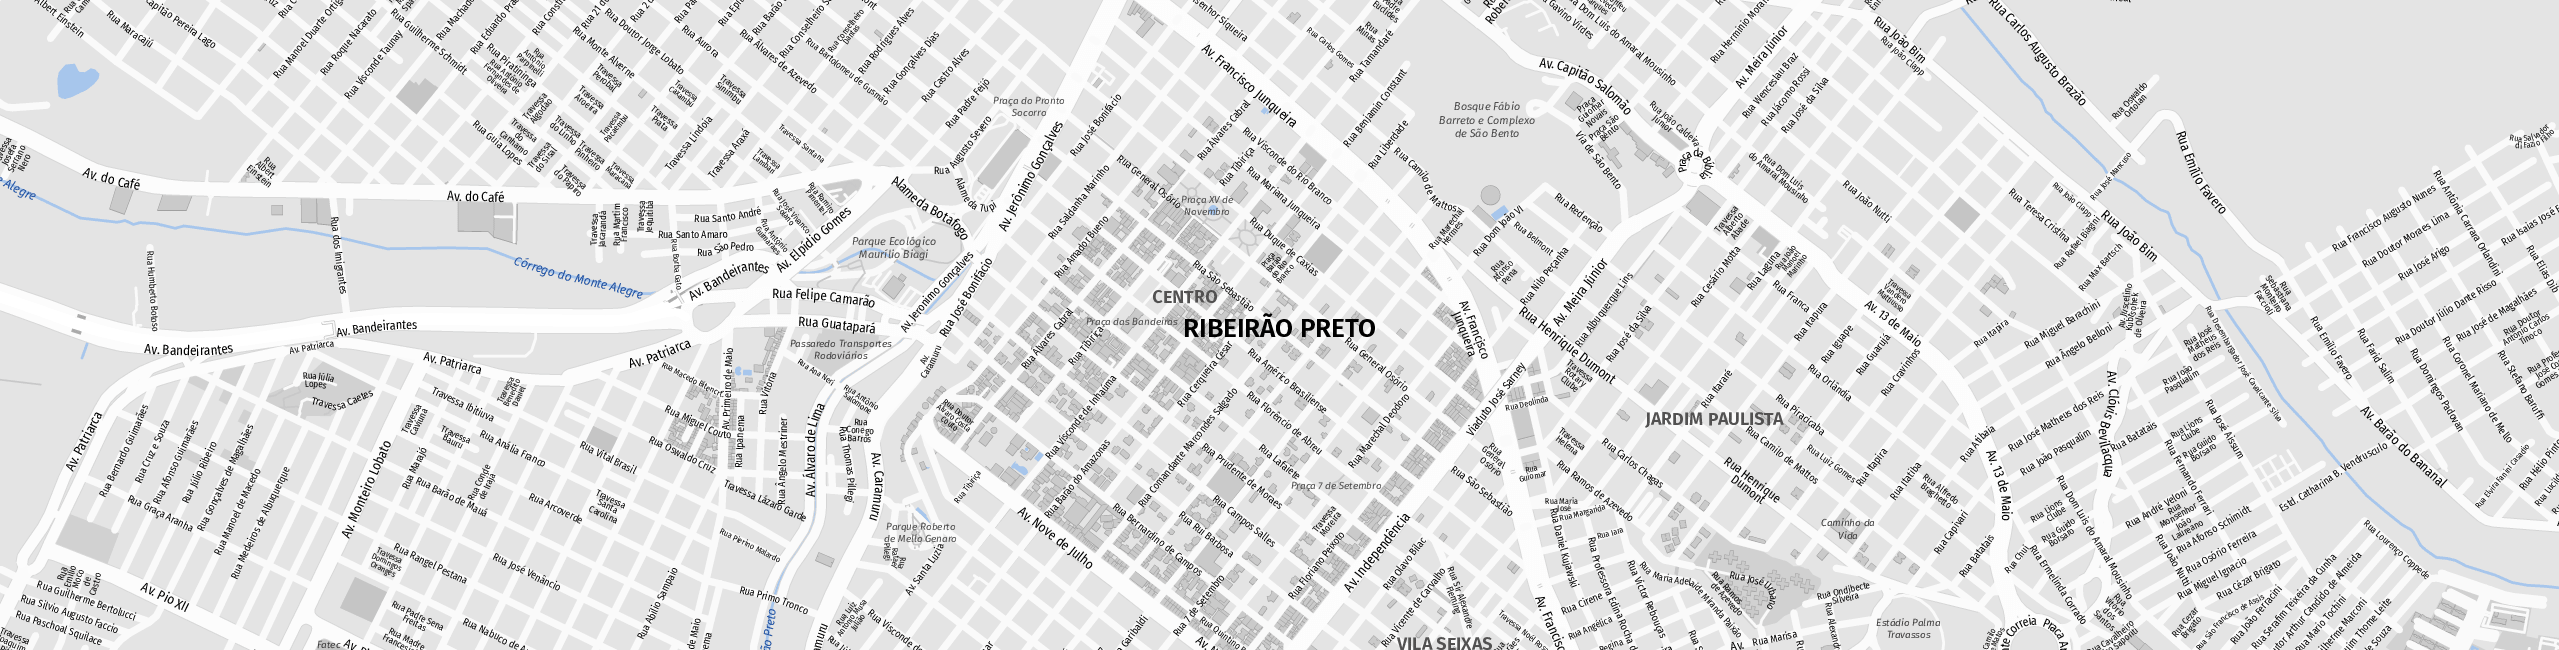 Stadtplan Ribeirão Preto zum Downloaden.